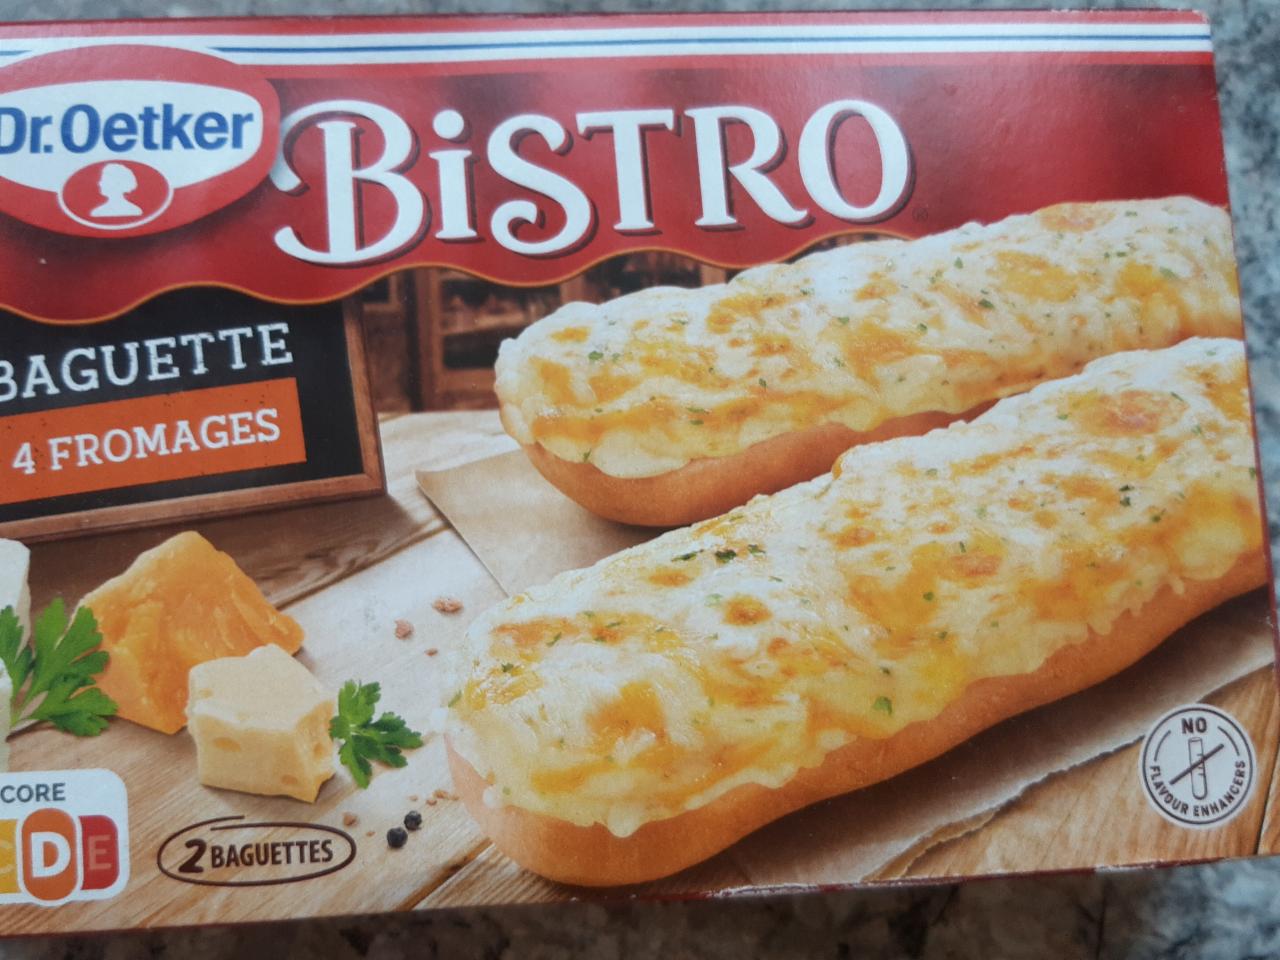 Bistro Baguette fromages nutriční hodnoty kalorie, kJ 4 - a Dr.Oetker